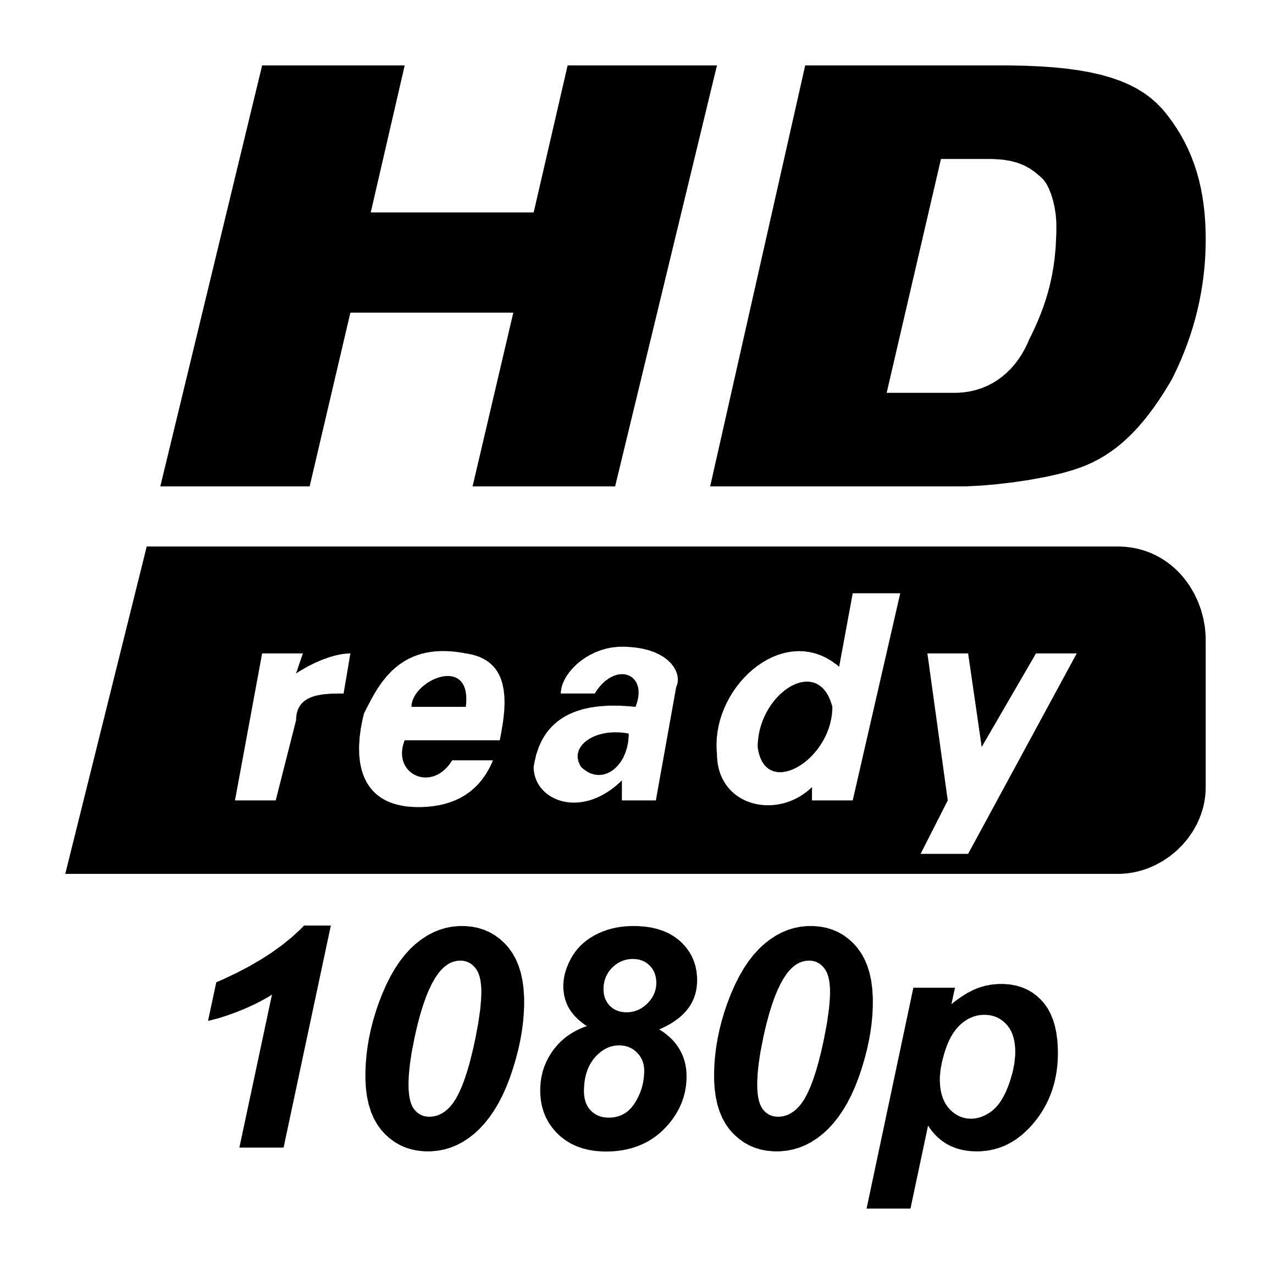 HD ready 1080p logo1